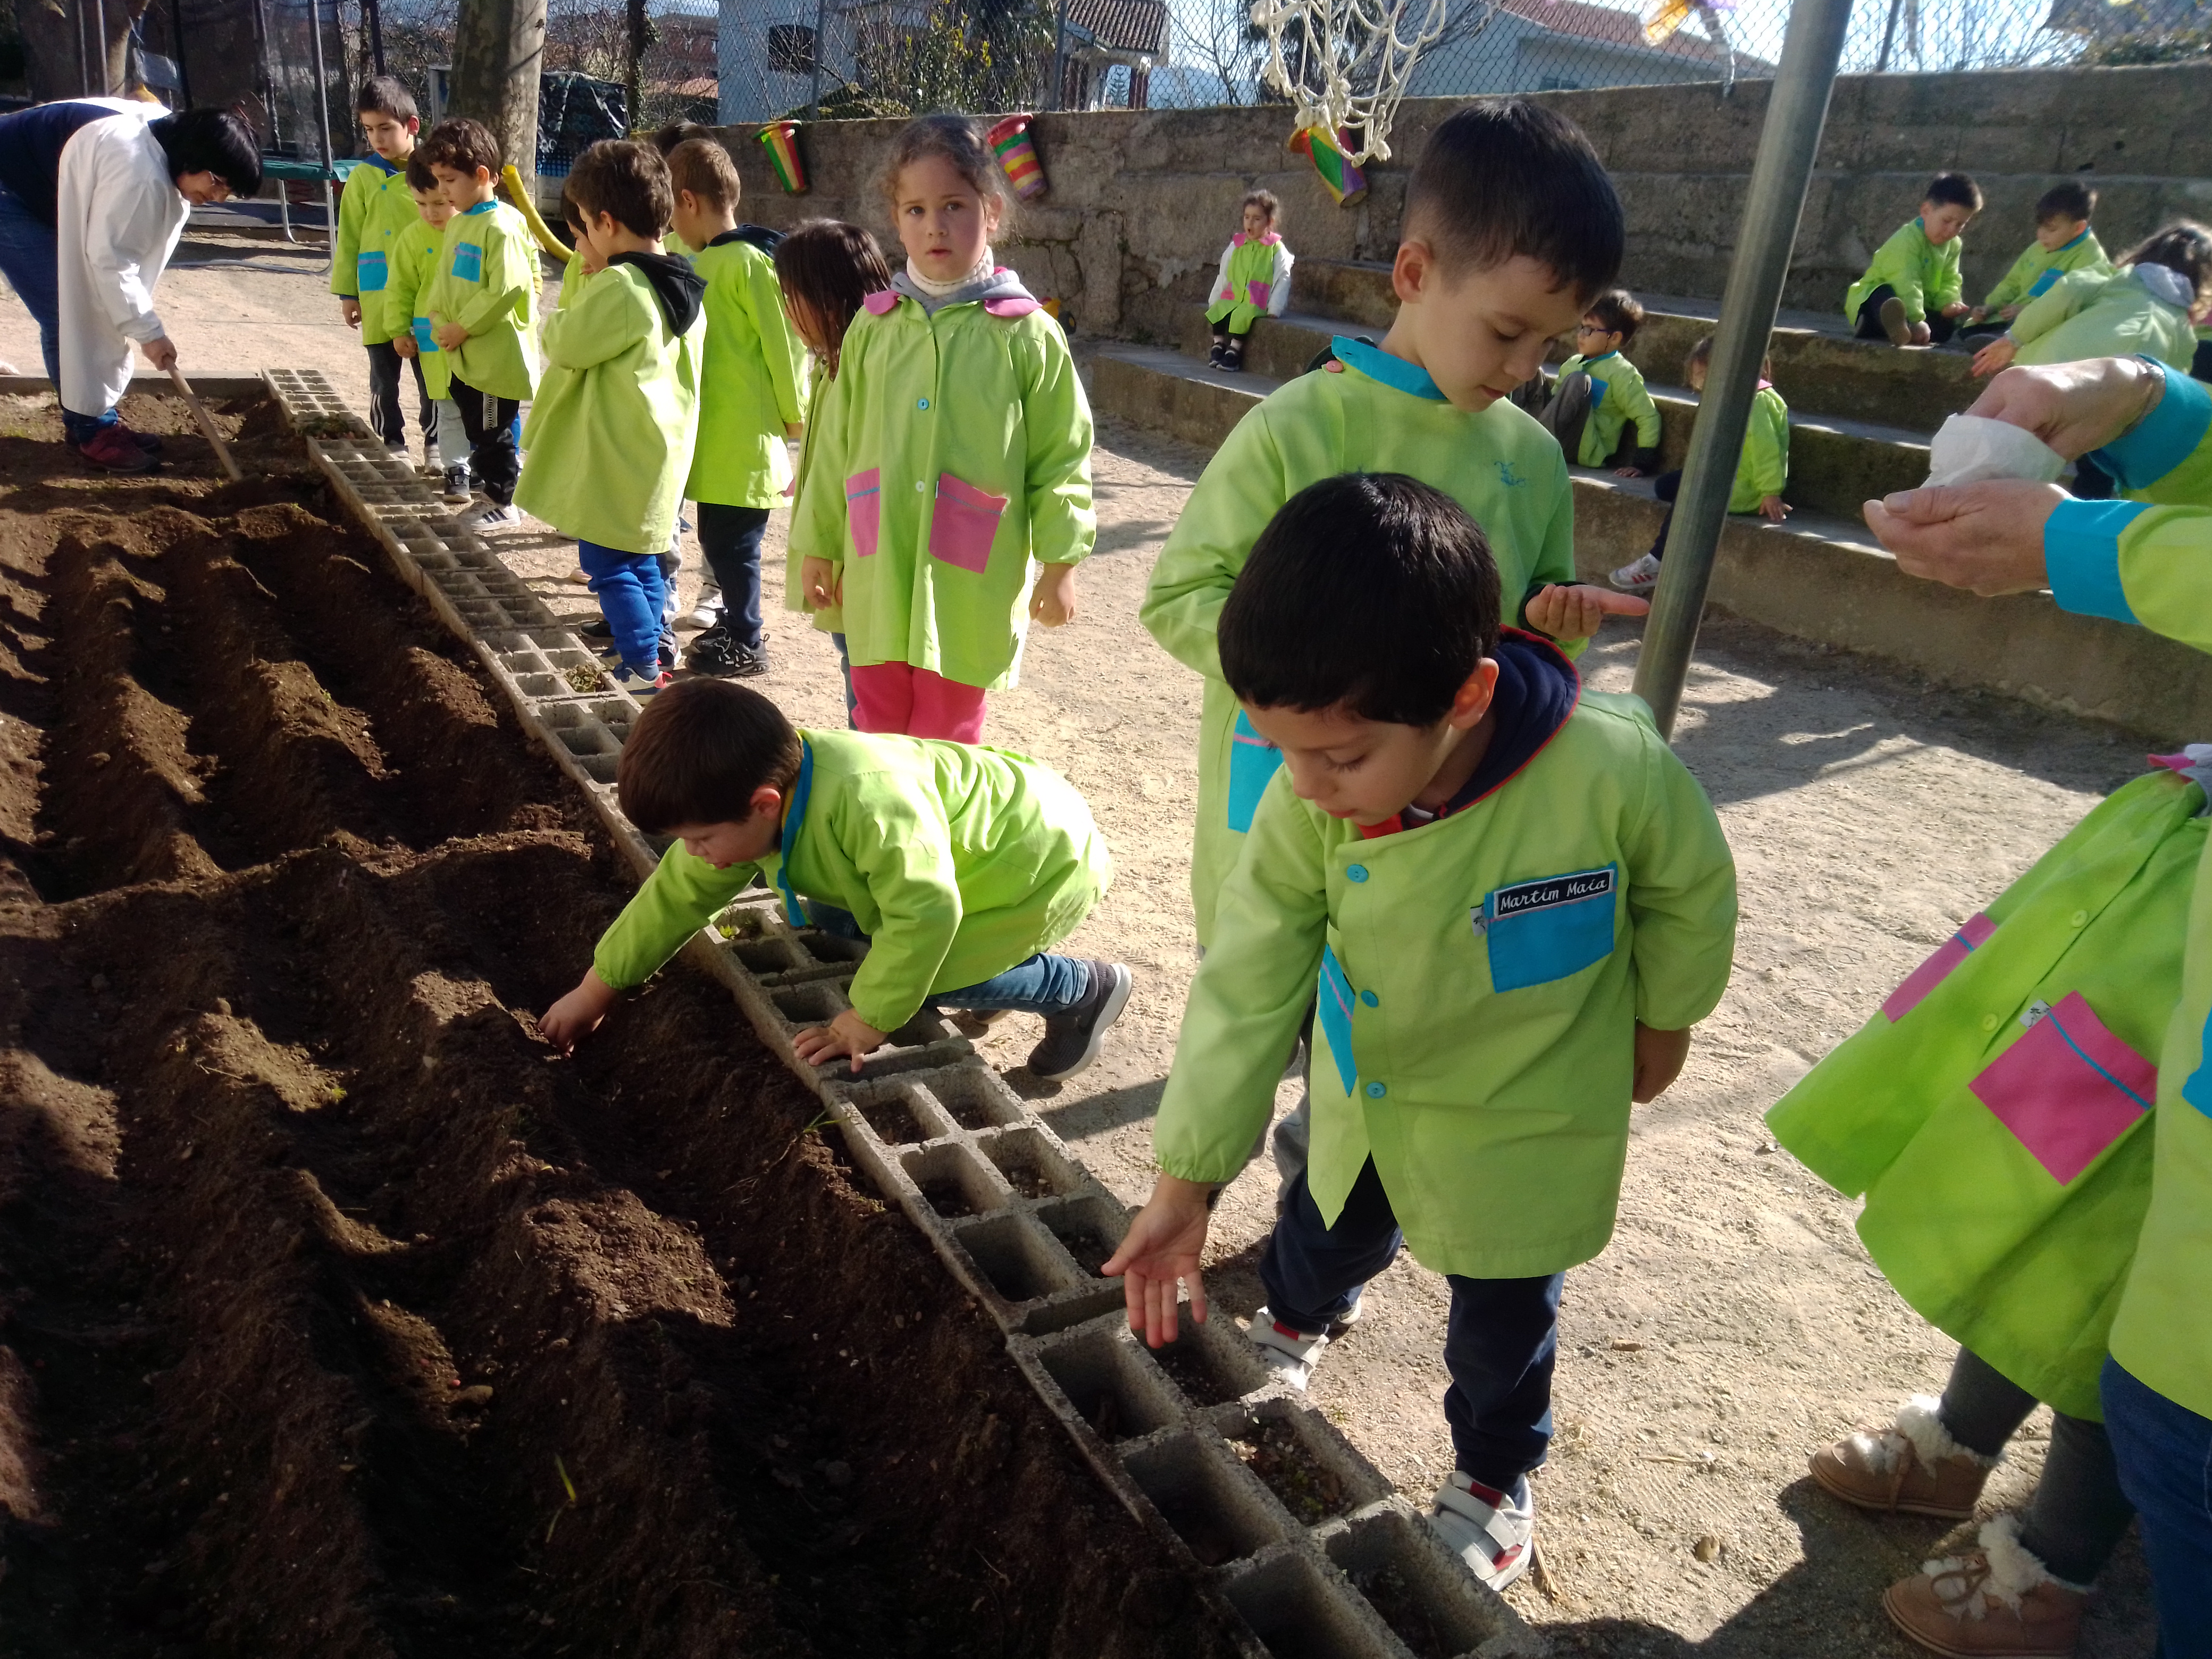 Os adultos ajudaram a cavar e prepararam os carreiros para colocar as sementes.